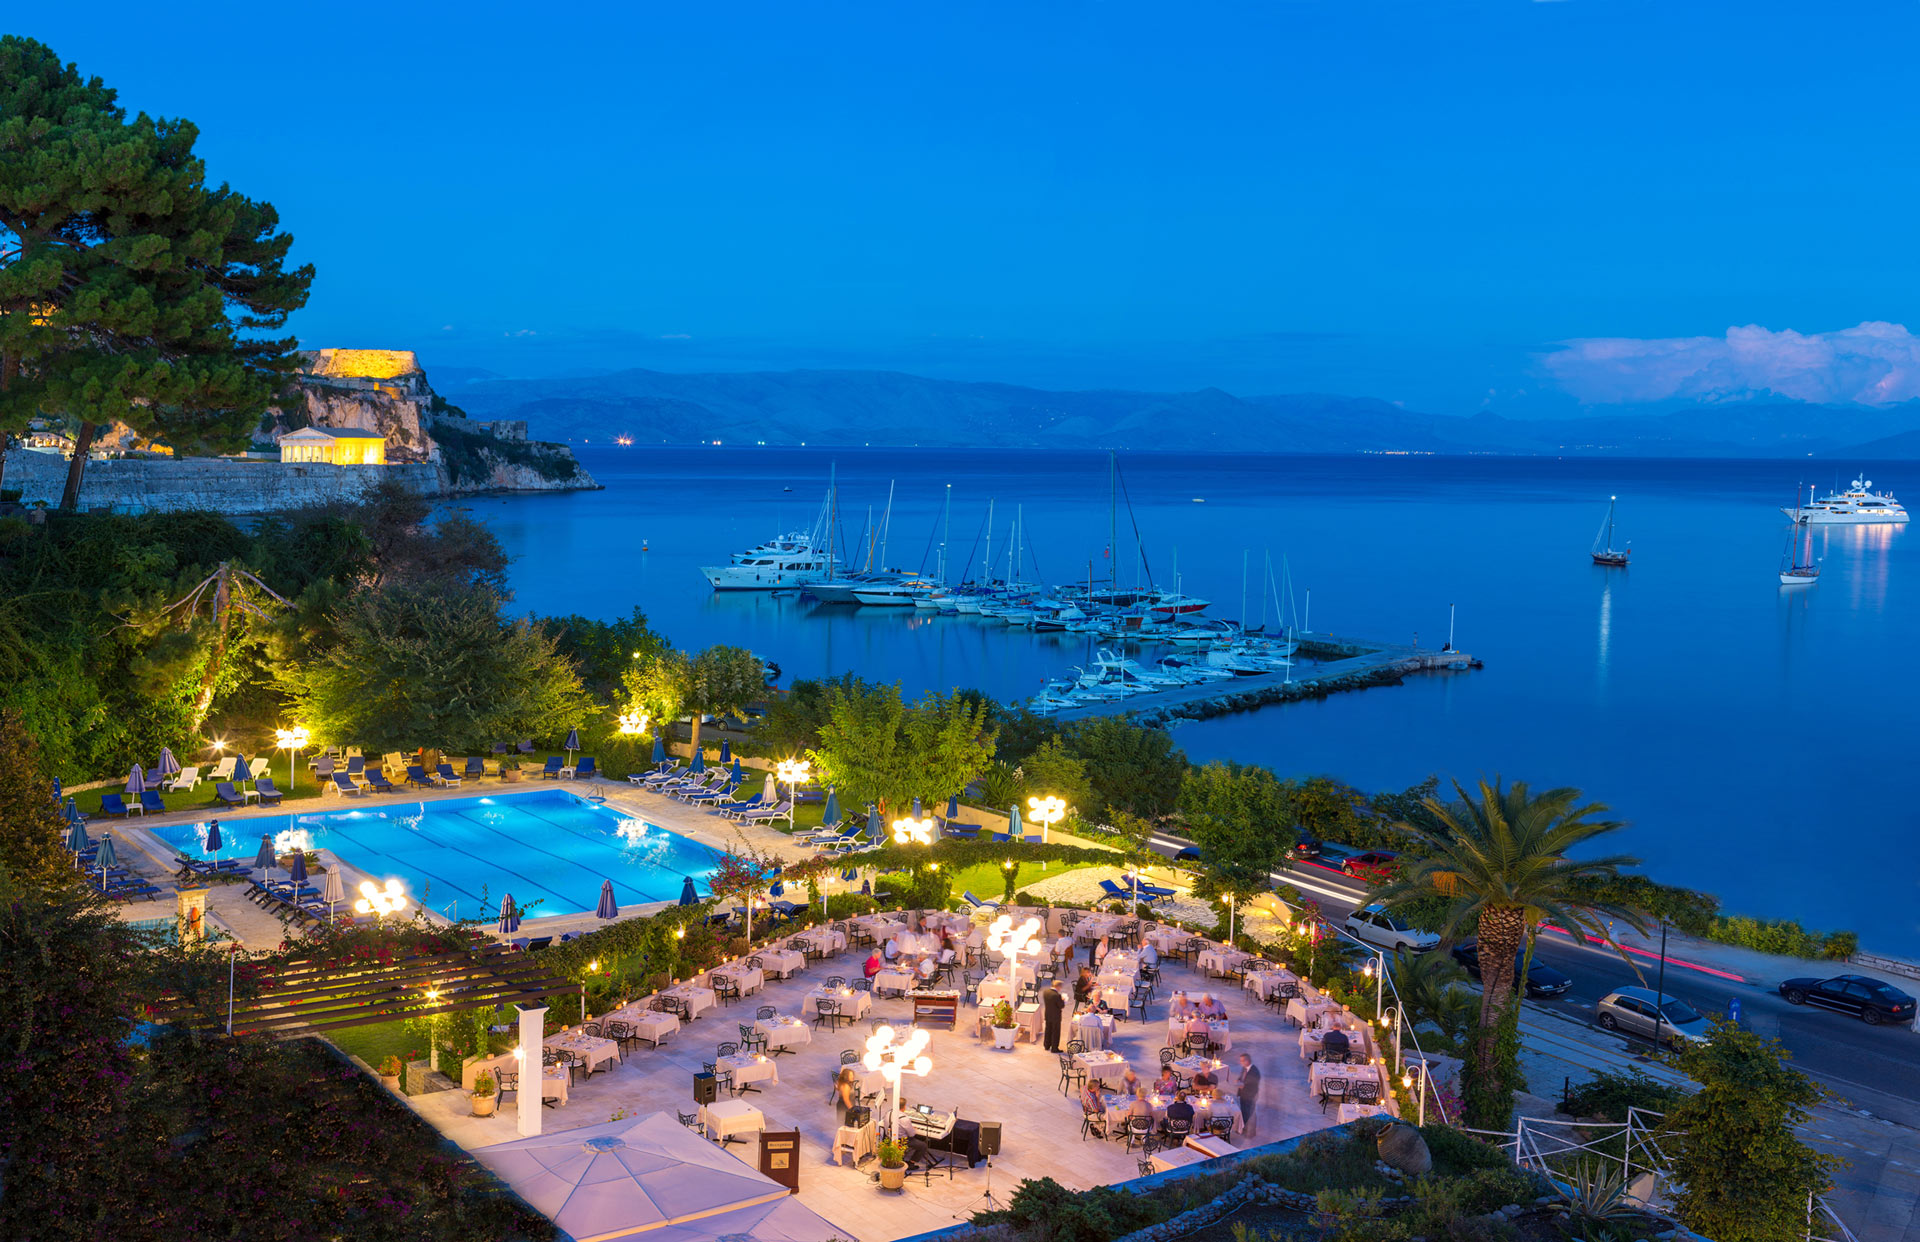 Αποκτά το εμβληματικό ξενοδοχείο Corfu Palace (όπου στεγάζεται και το καζίνο) στην πόλη της Κέρκυρας ο Χένρι Χόλτερμαν του Ελλάκτωρα